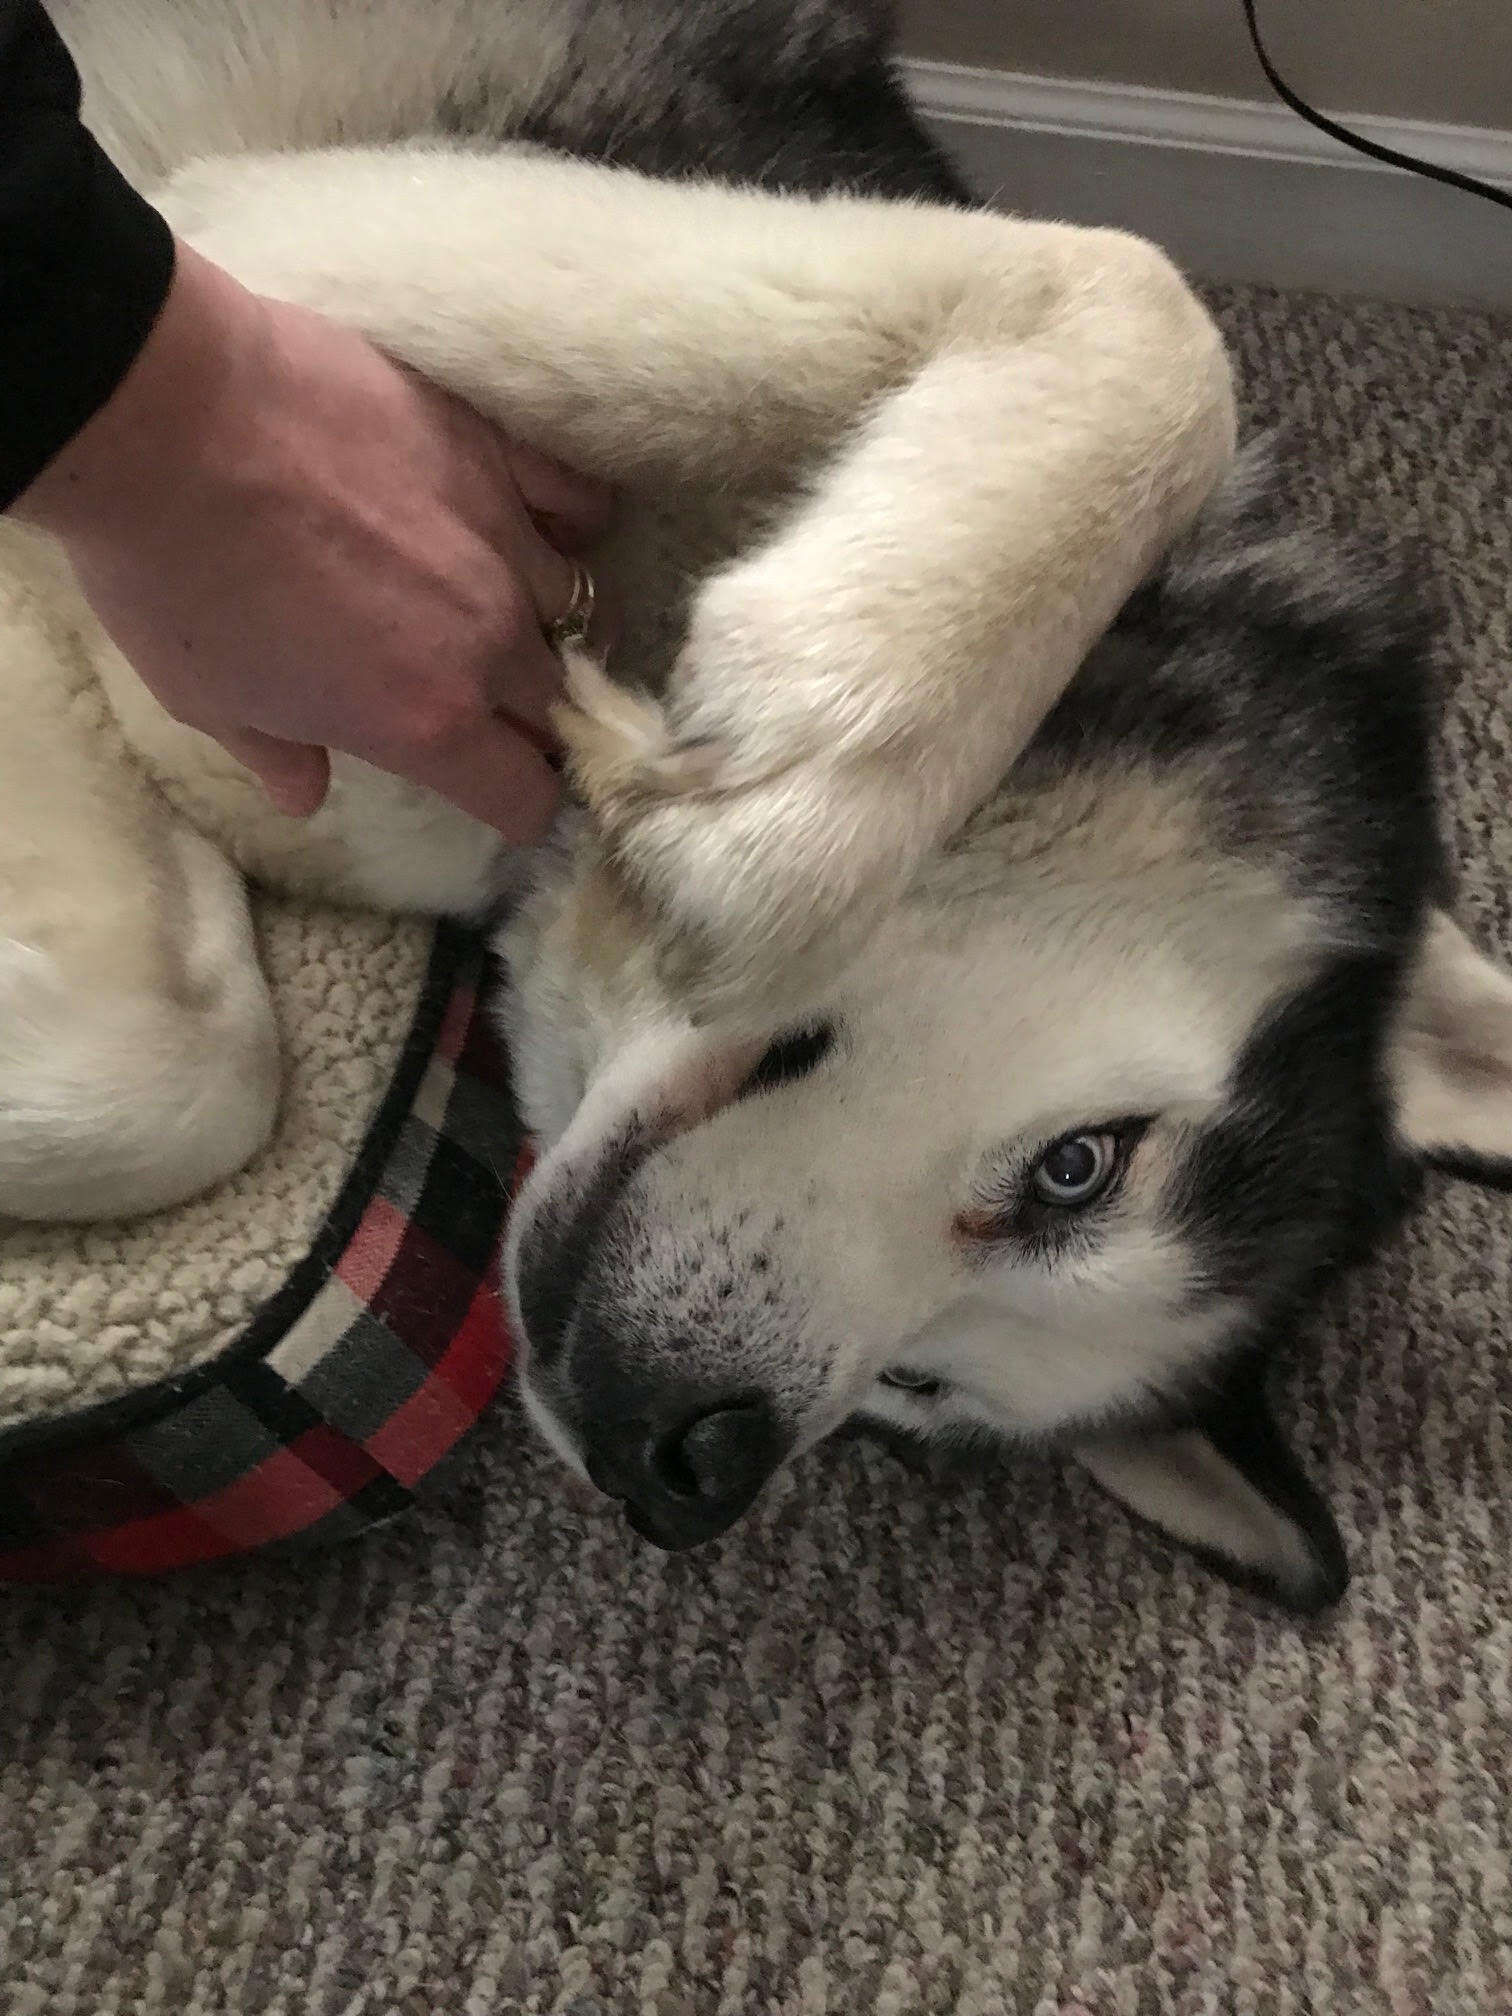 Husky dog getting a belly rub